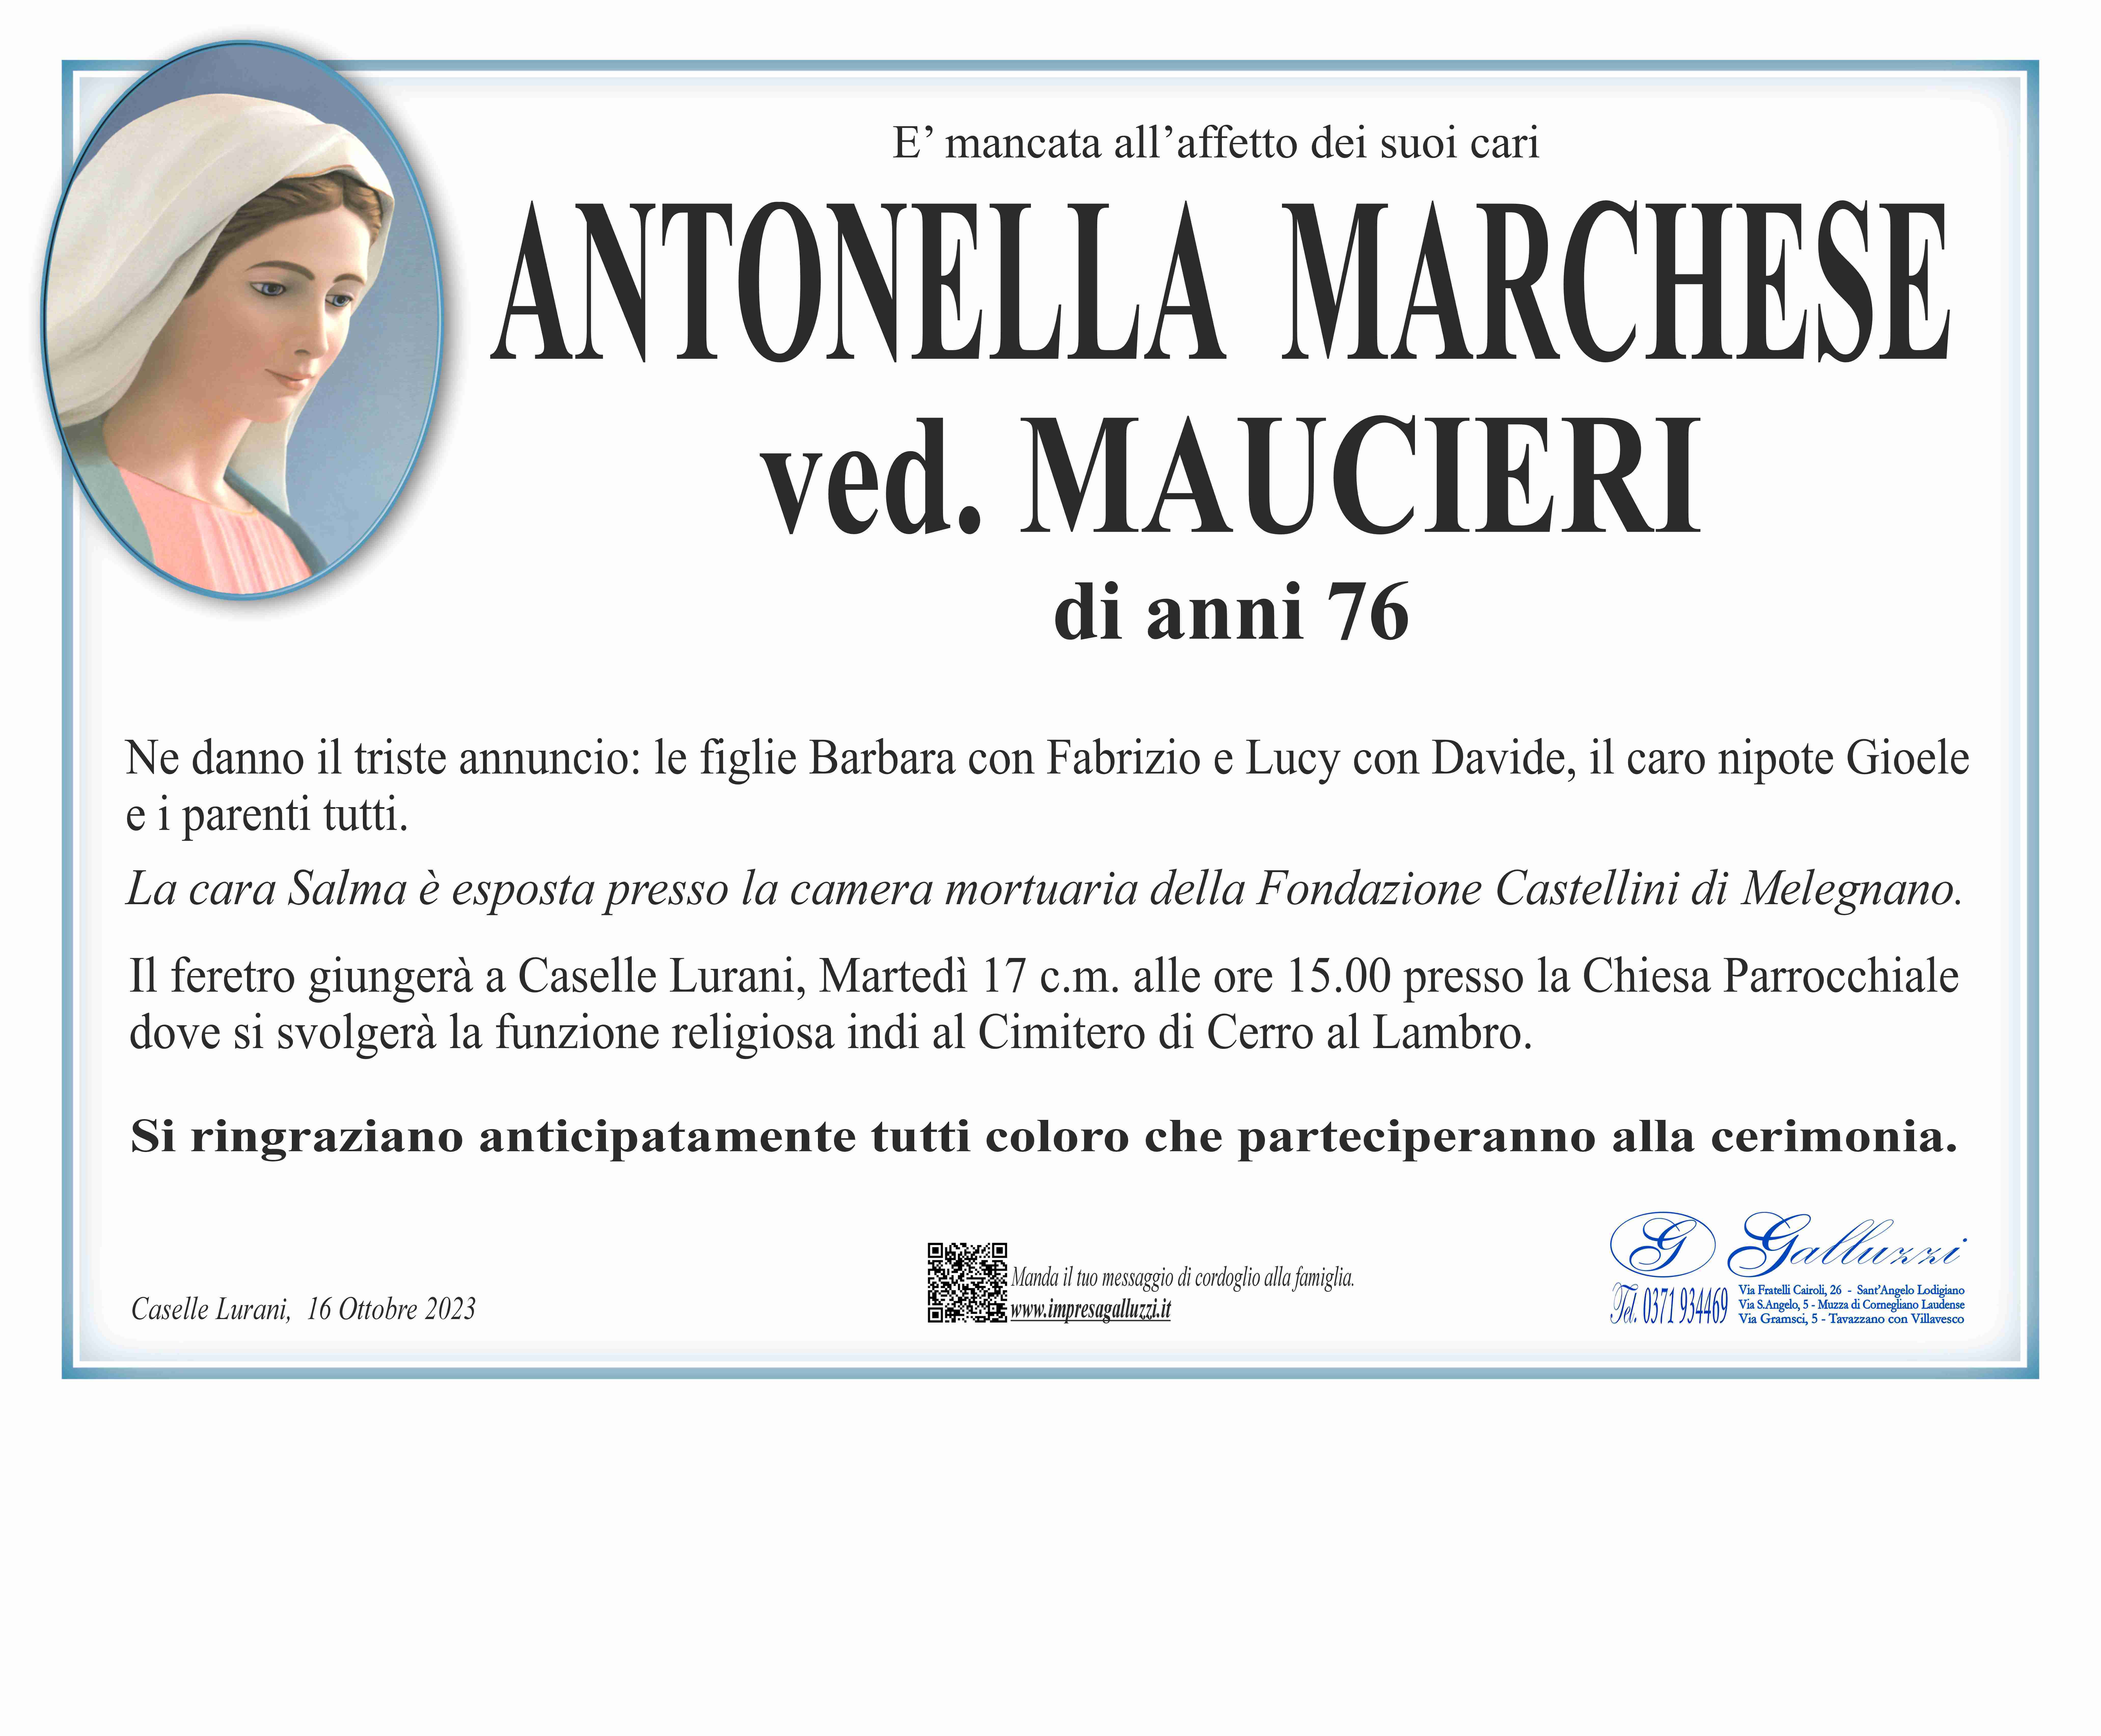 Antonella Marchese